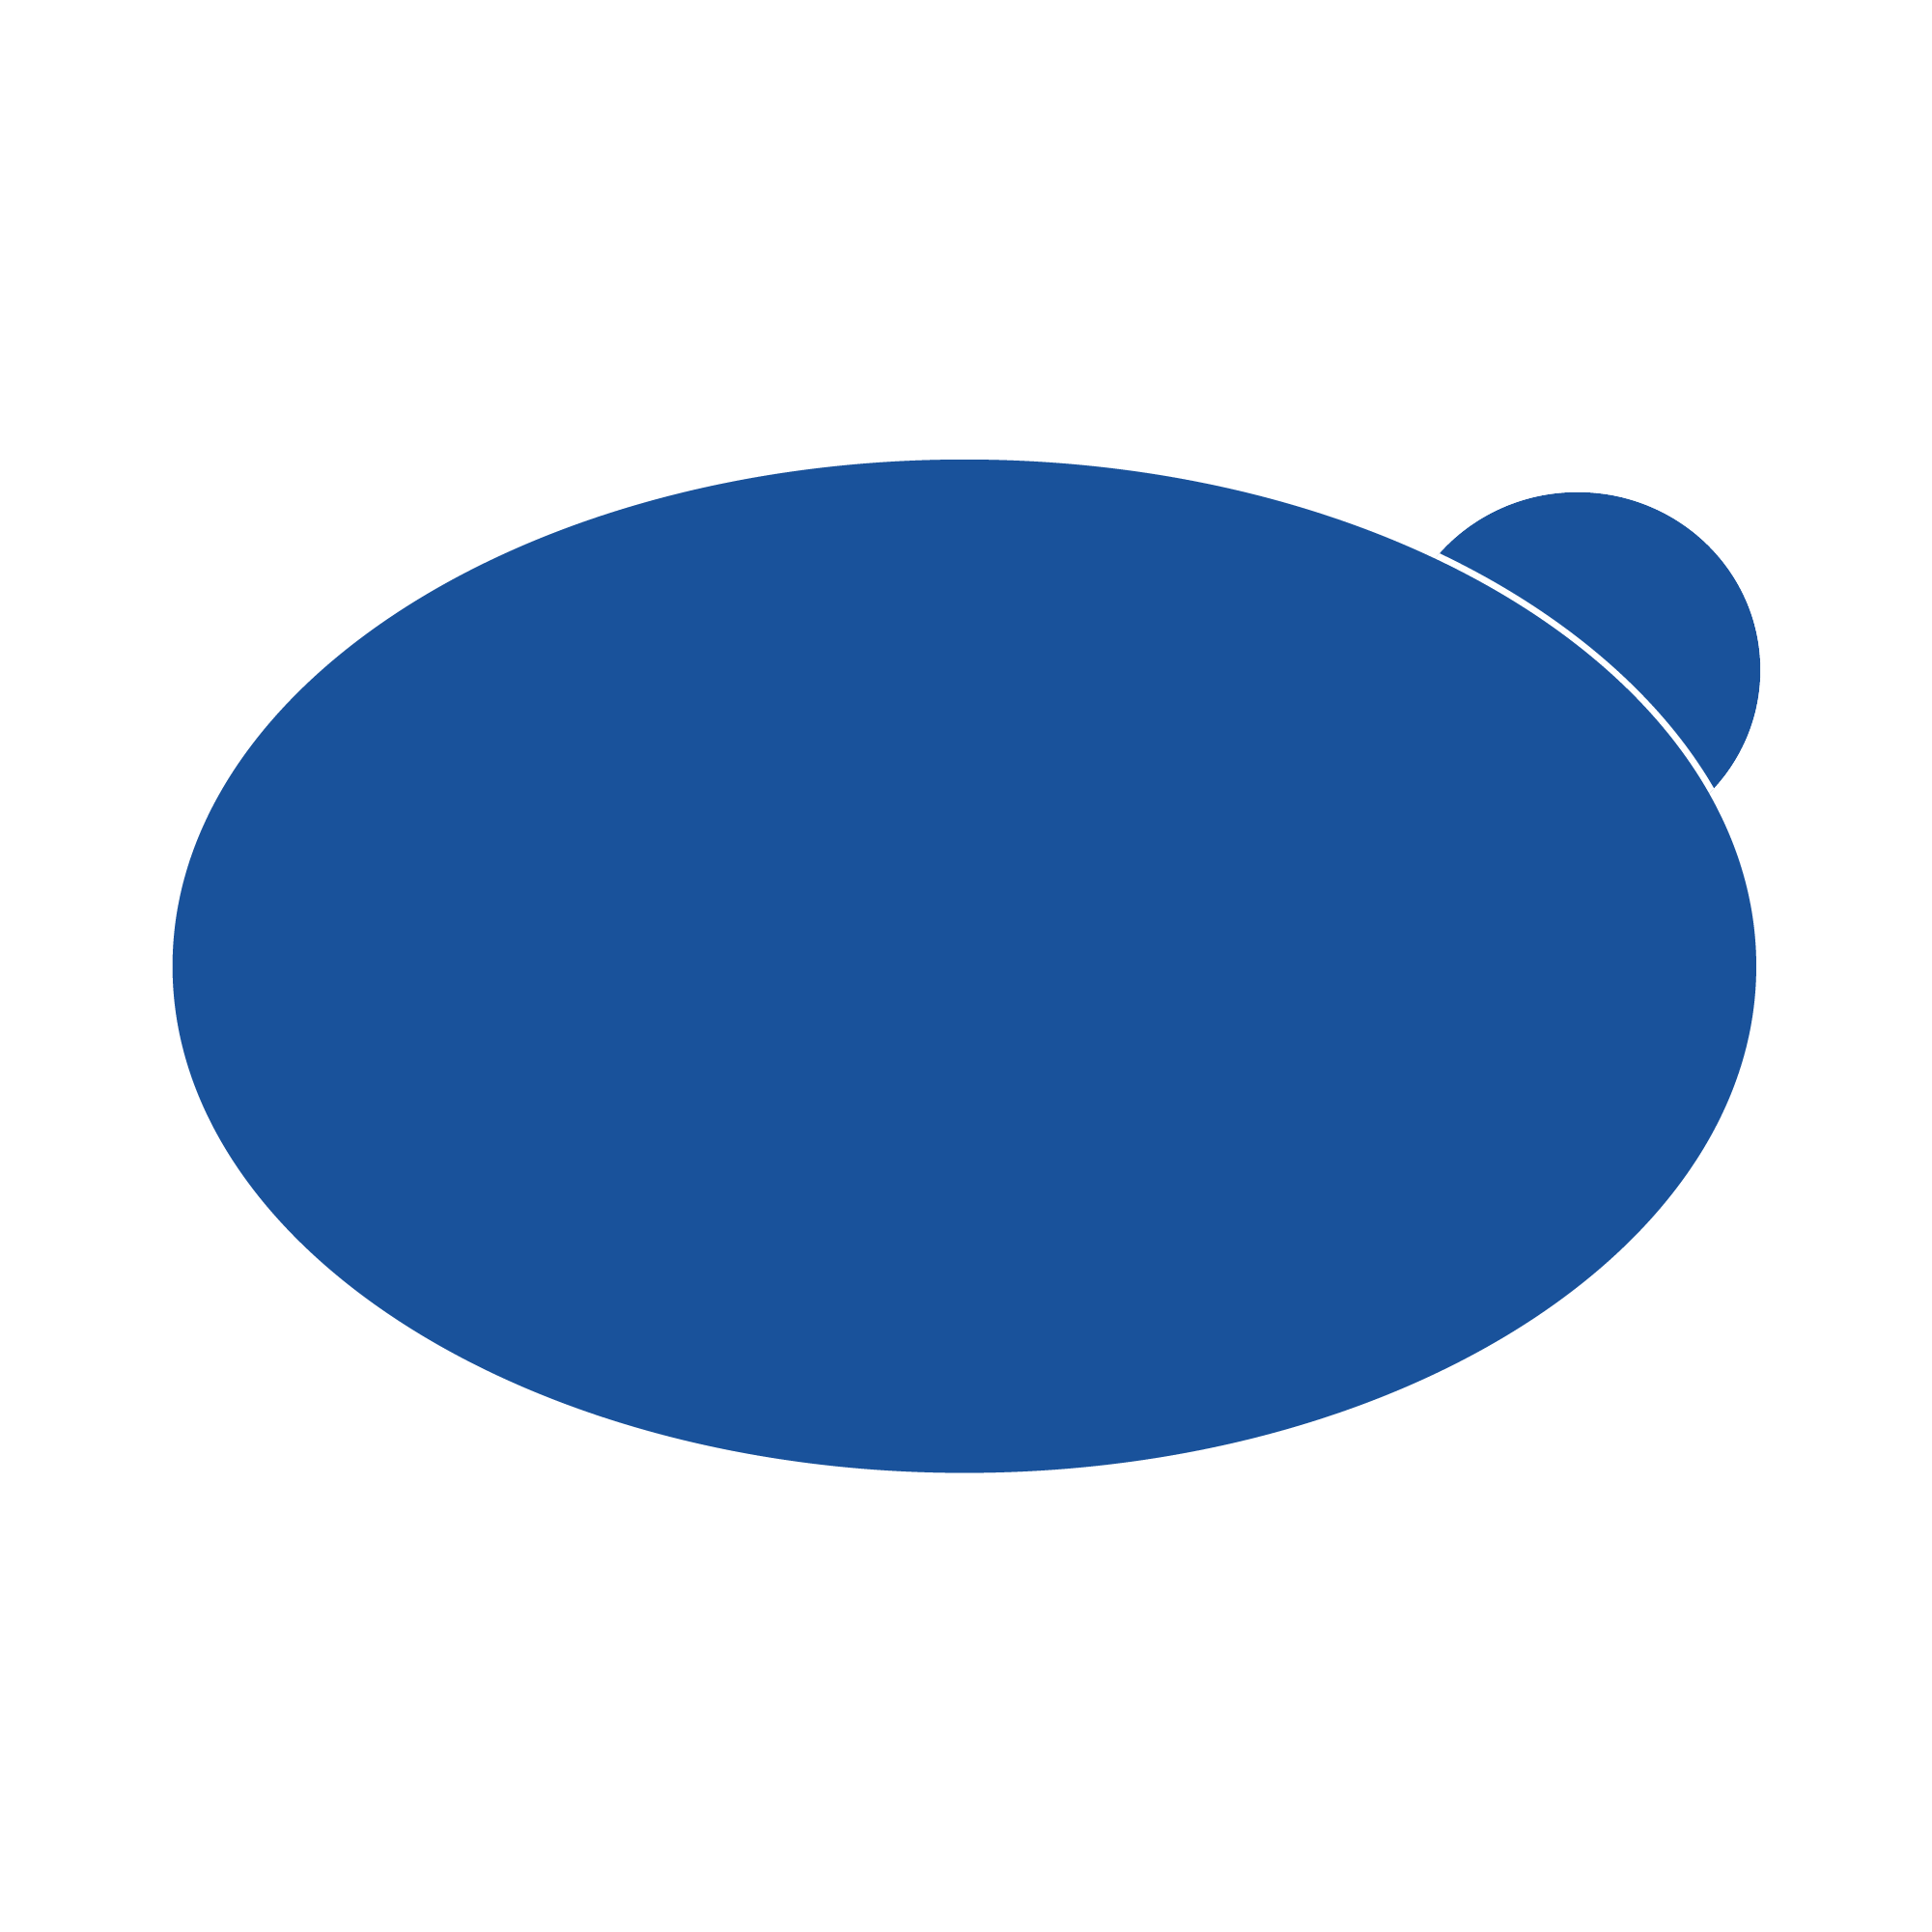 Blasenstopper – 6 ovale Stopper für Ballen/Fußkante